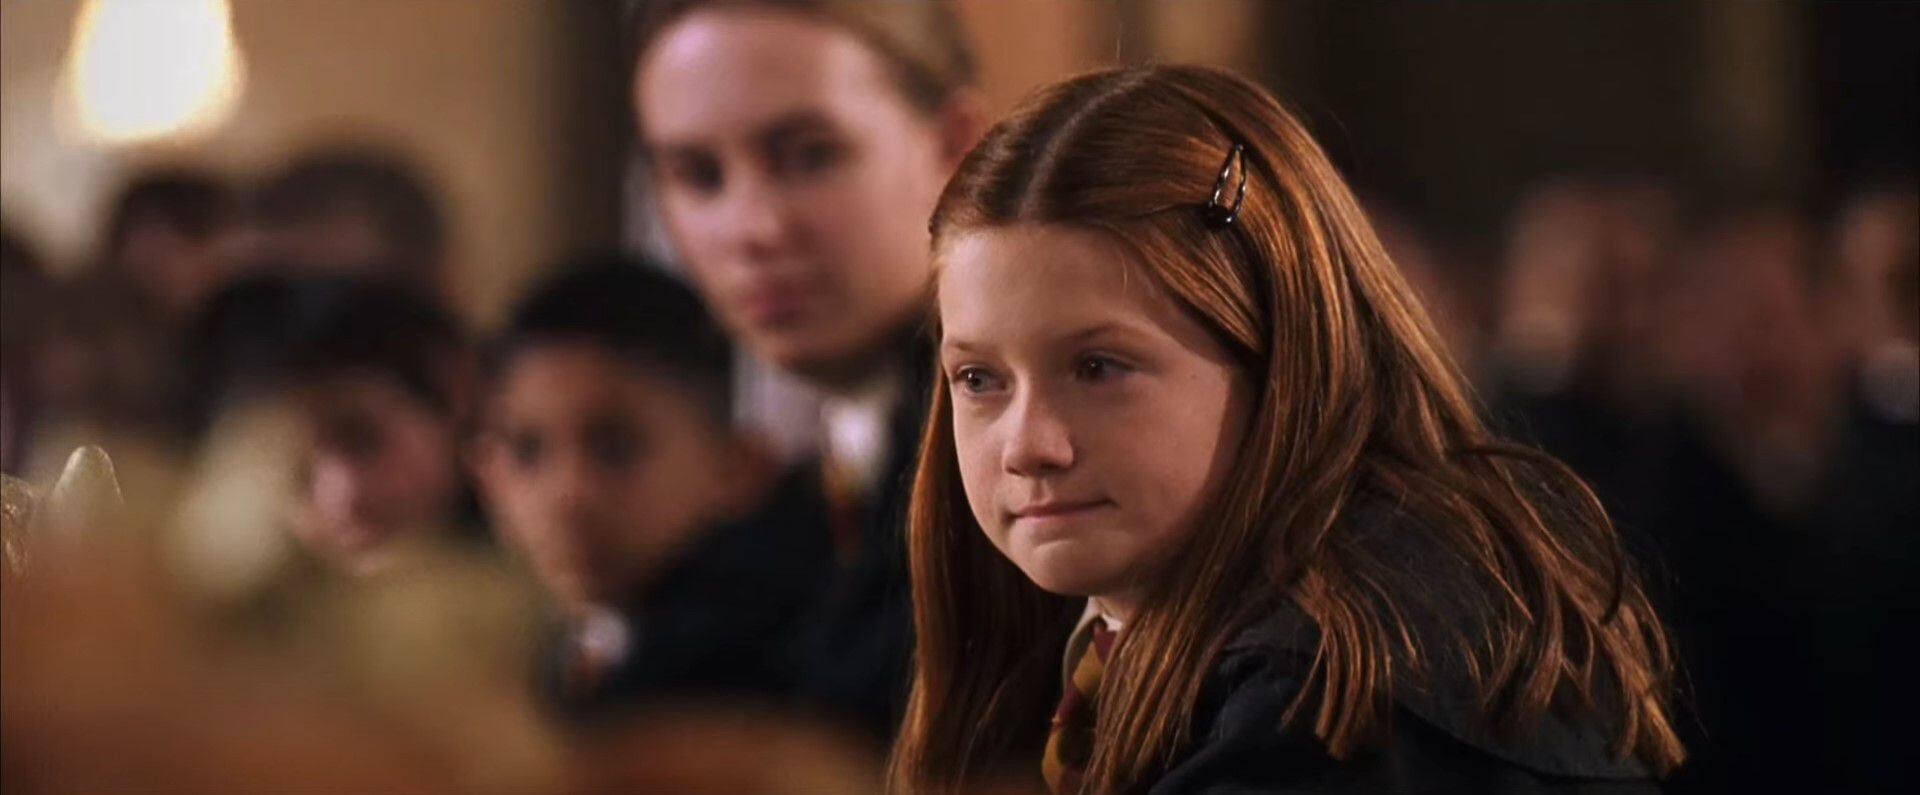 Ginny Weasley es considerada uno de los personajes más desperdiciados en las adaptaciones cinematográficas de Harry Potter